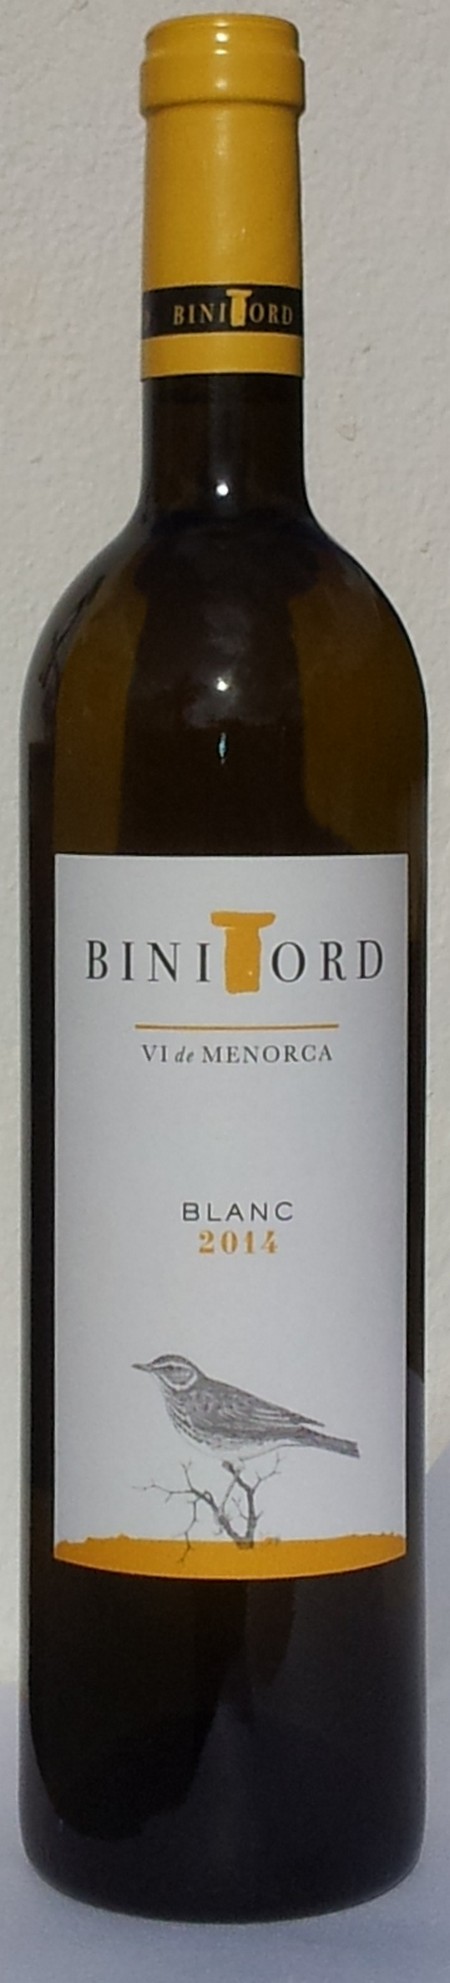 binitord-blanc-2014